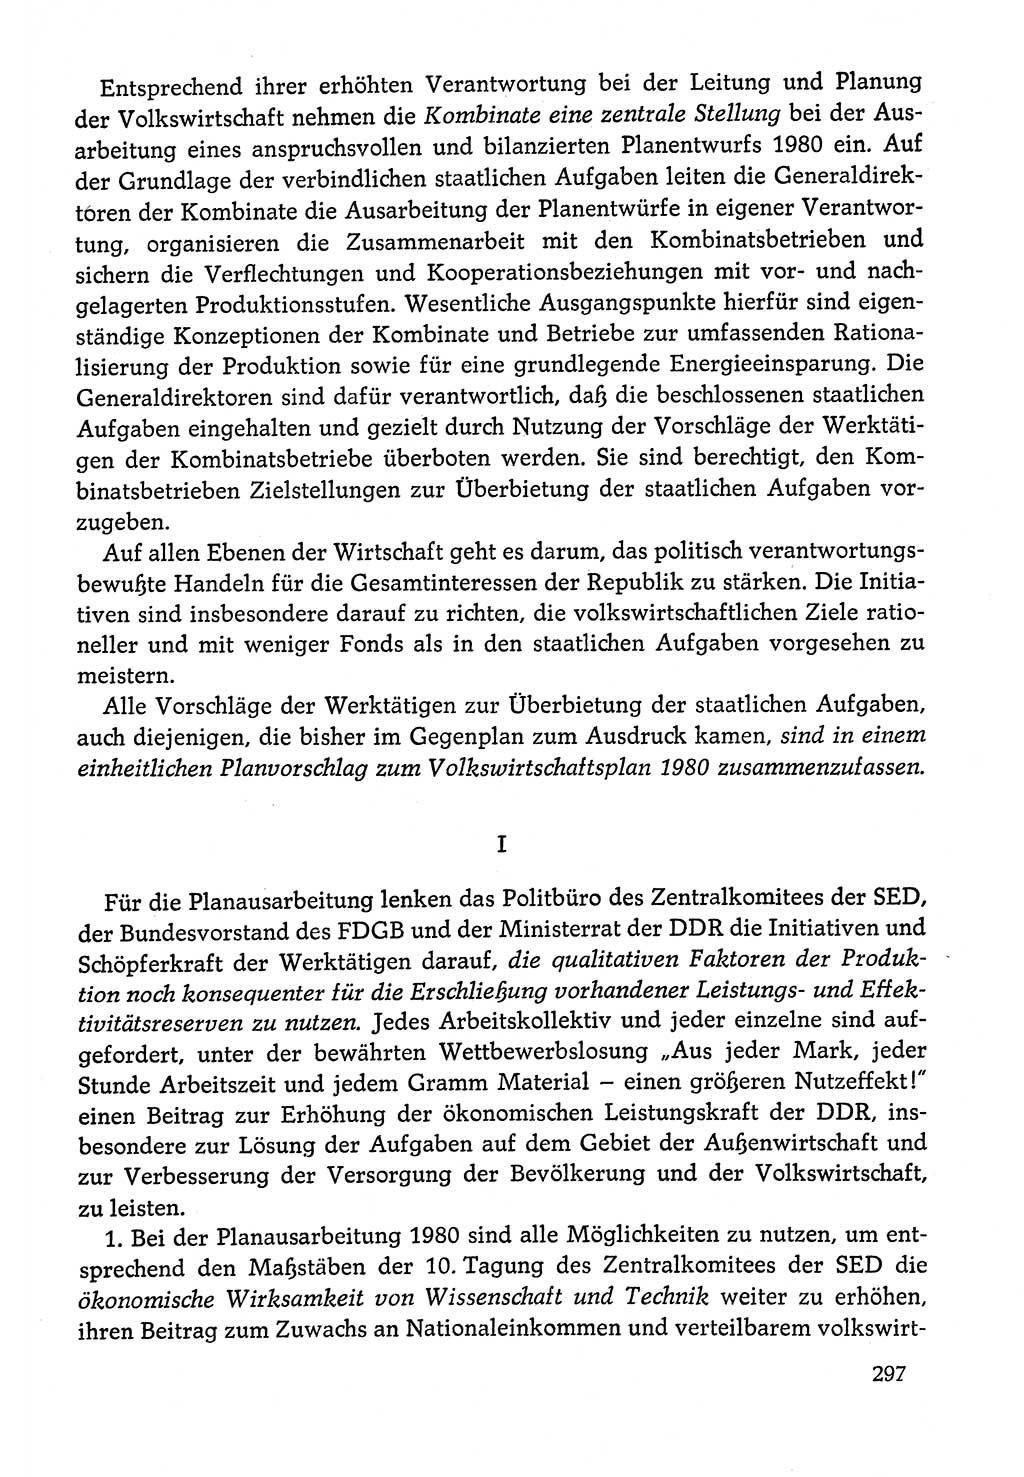 Dokumente der Sozialistischen Einheitspartei Deutschlands (SED) [Deutsche Demokratische Republik (DDR)] 1978-1979, Seite 297 (Dok. SED DDR 1978-1979, S. 297)